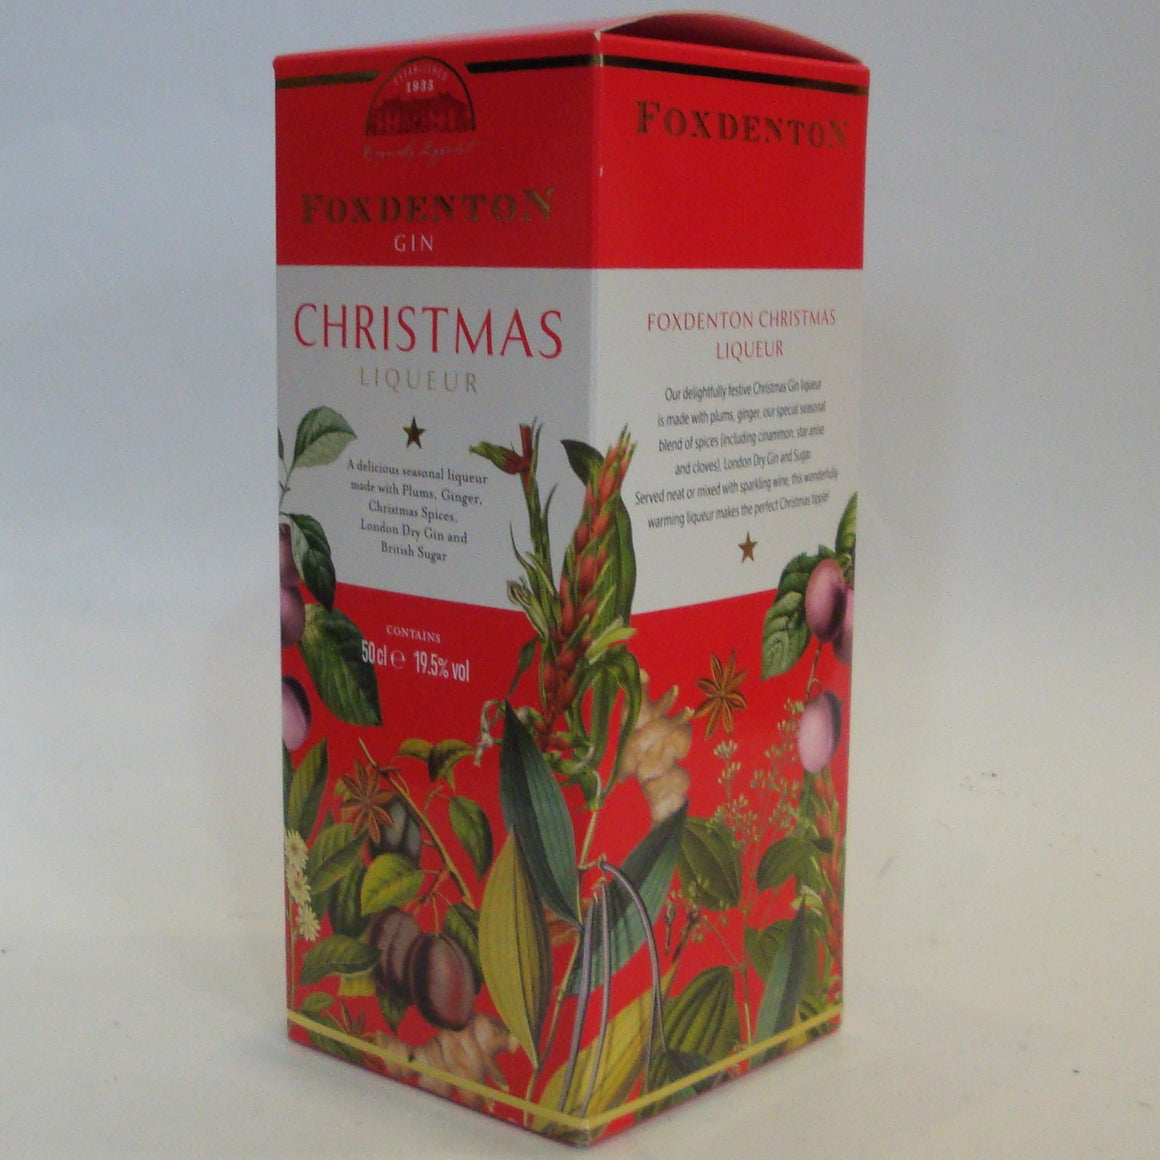 Foxdenton Christmas Liqueur with carton